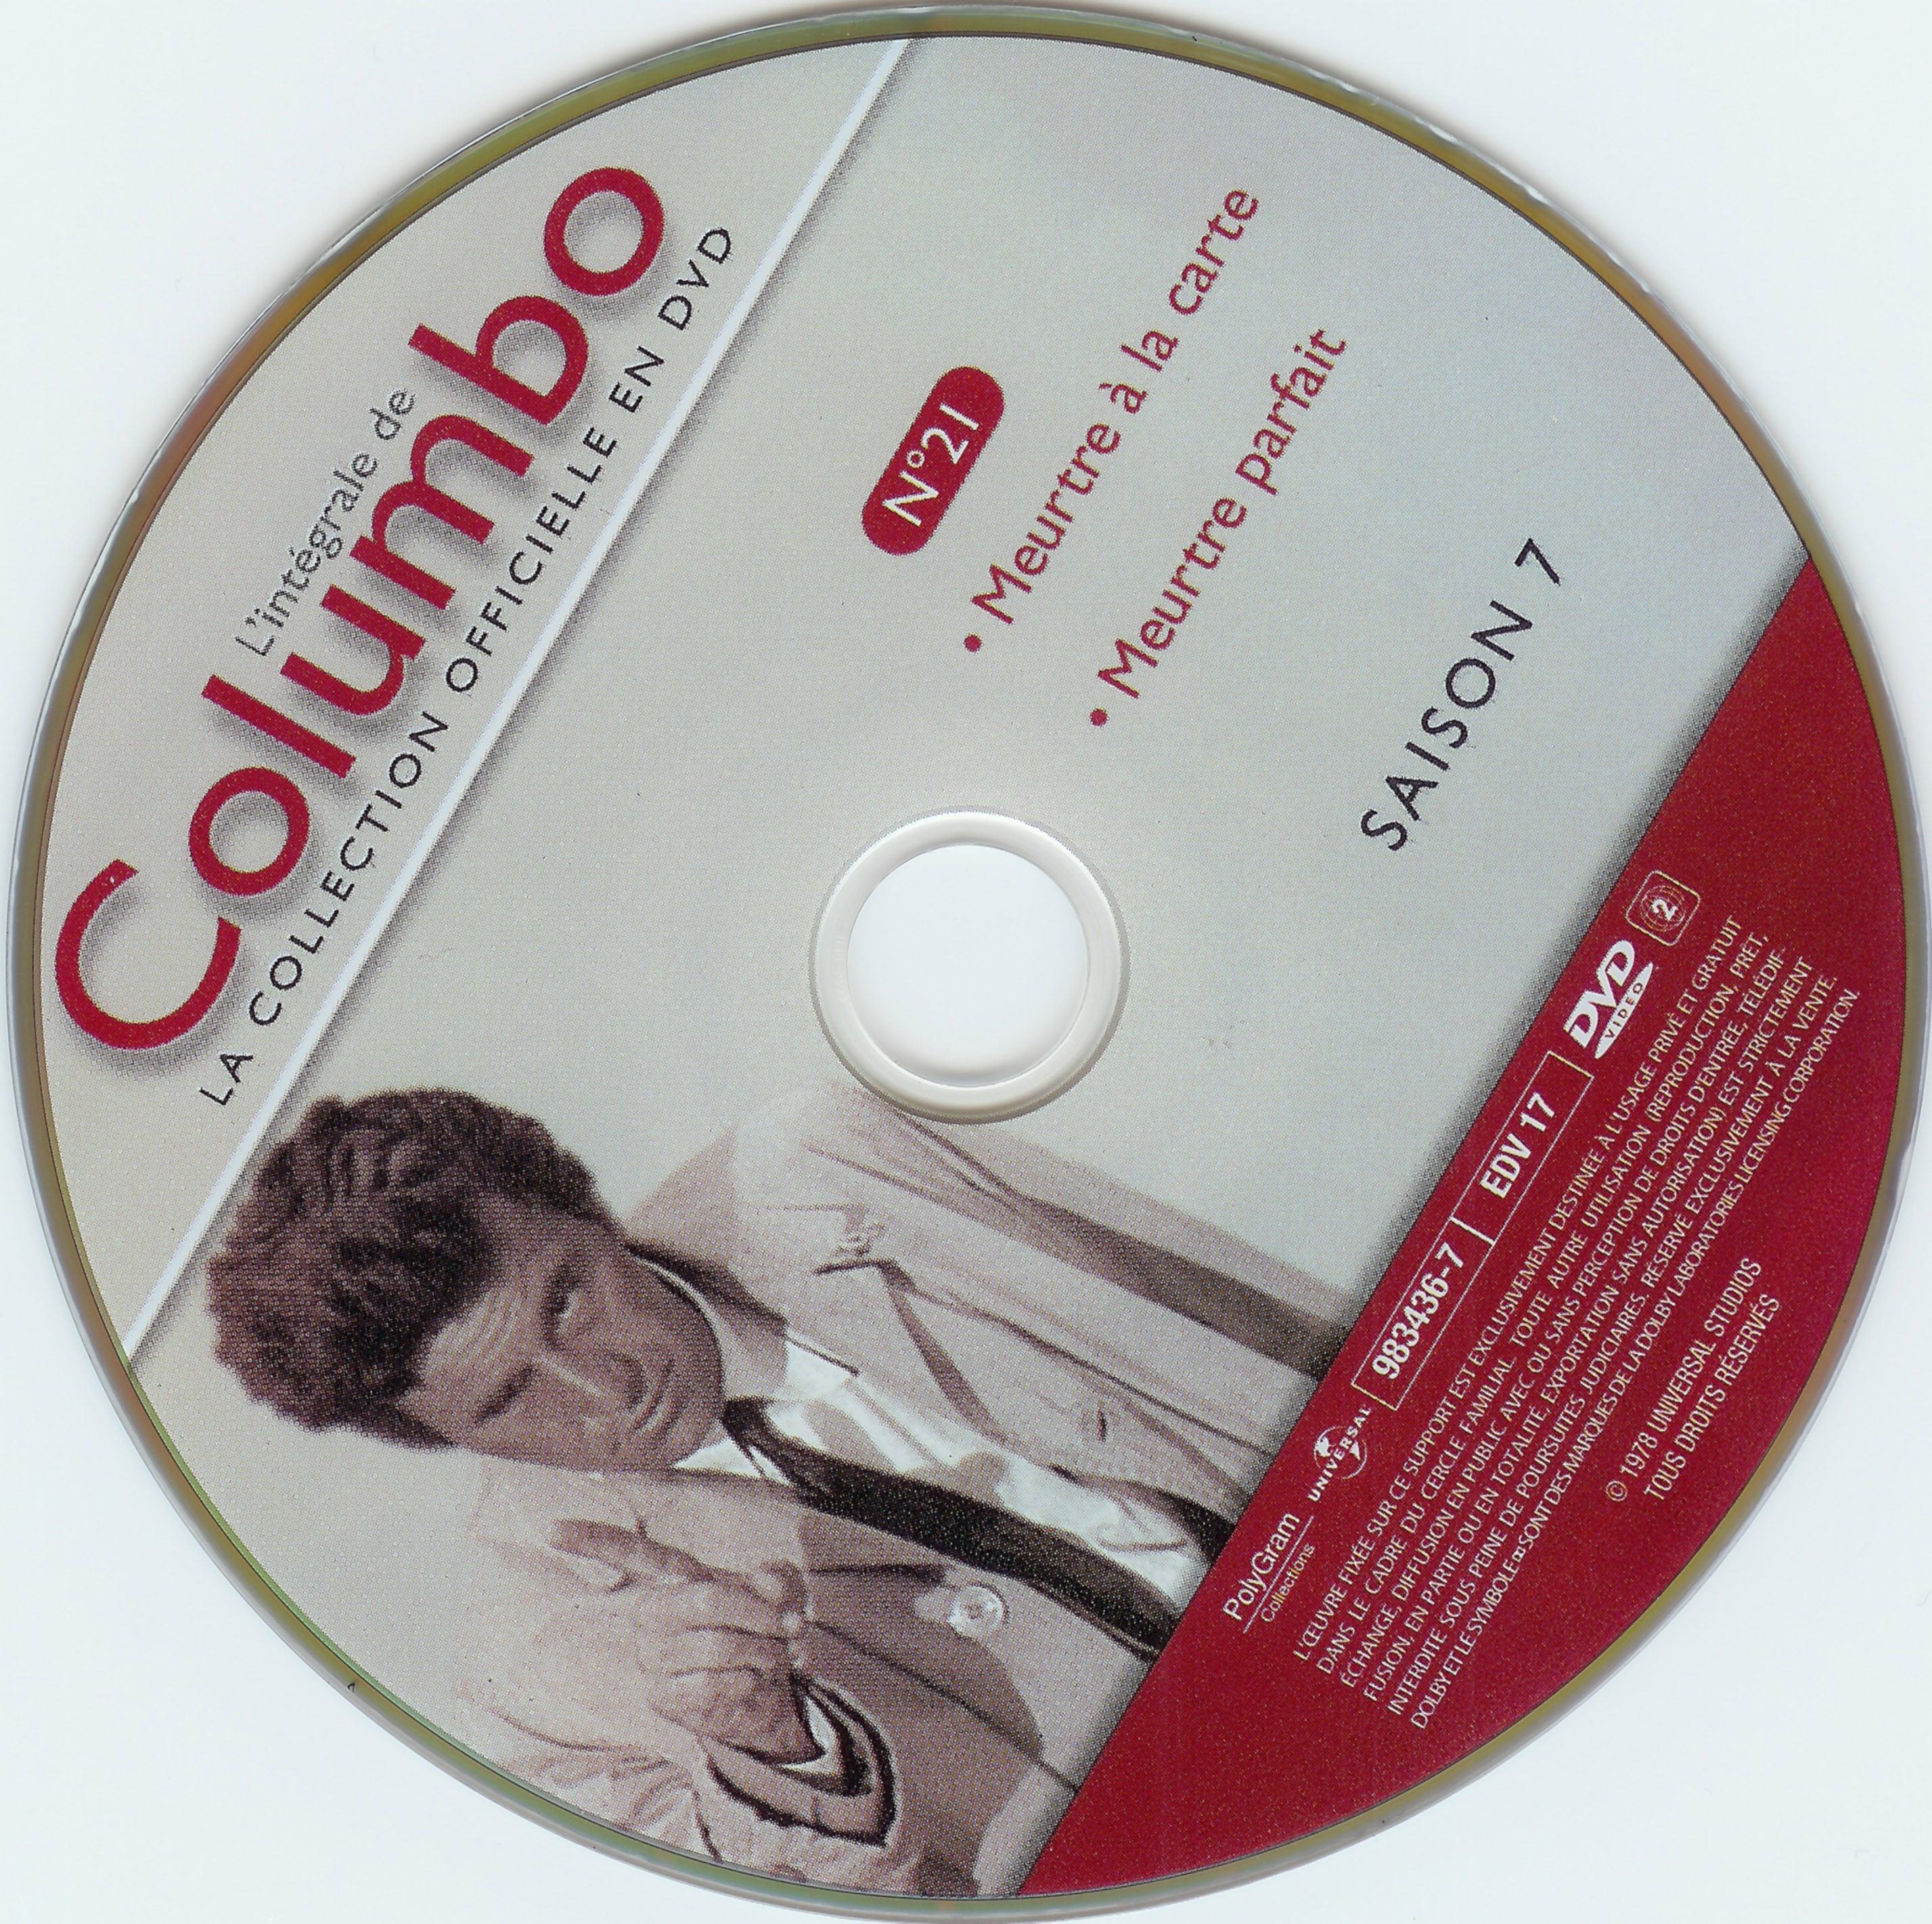 Columbo saison 7 vol 21